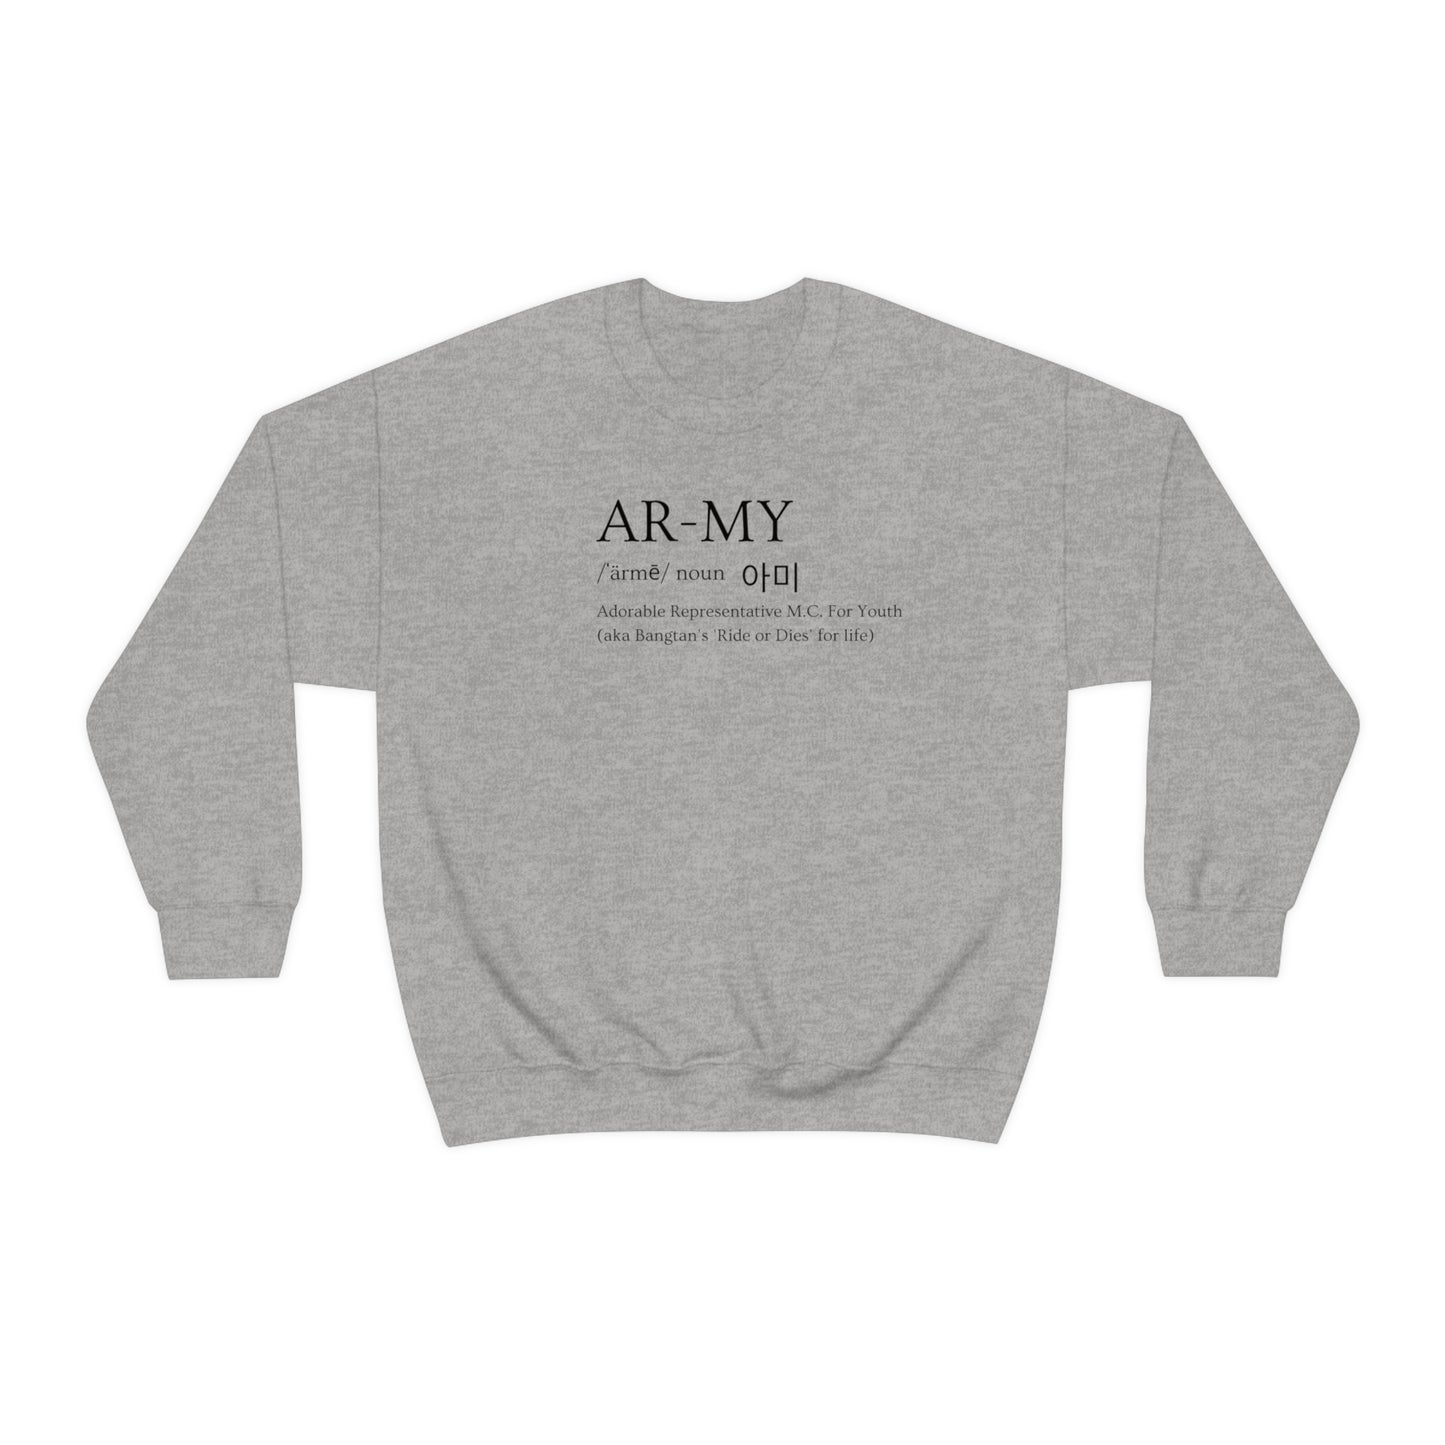 ARMY Ride or Die Sweatshirt